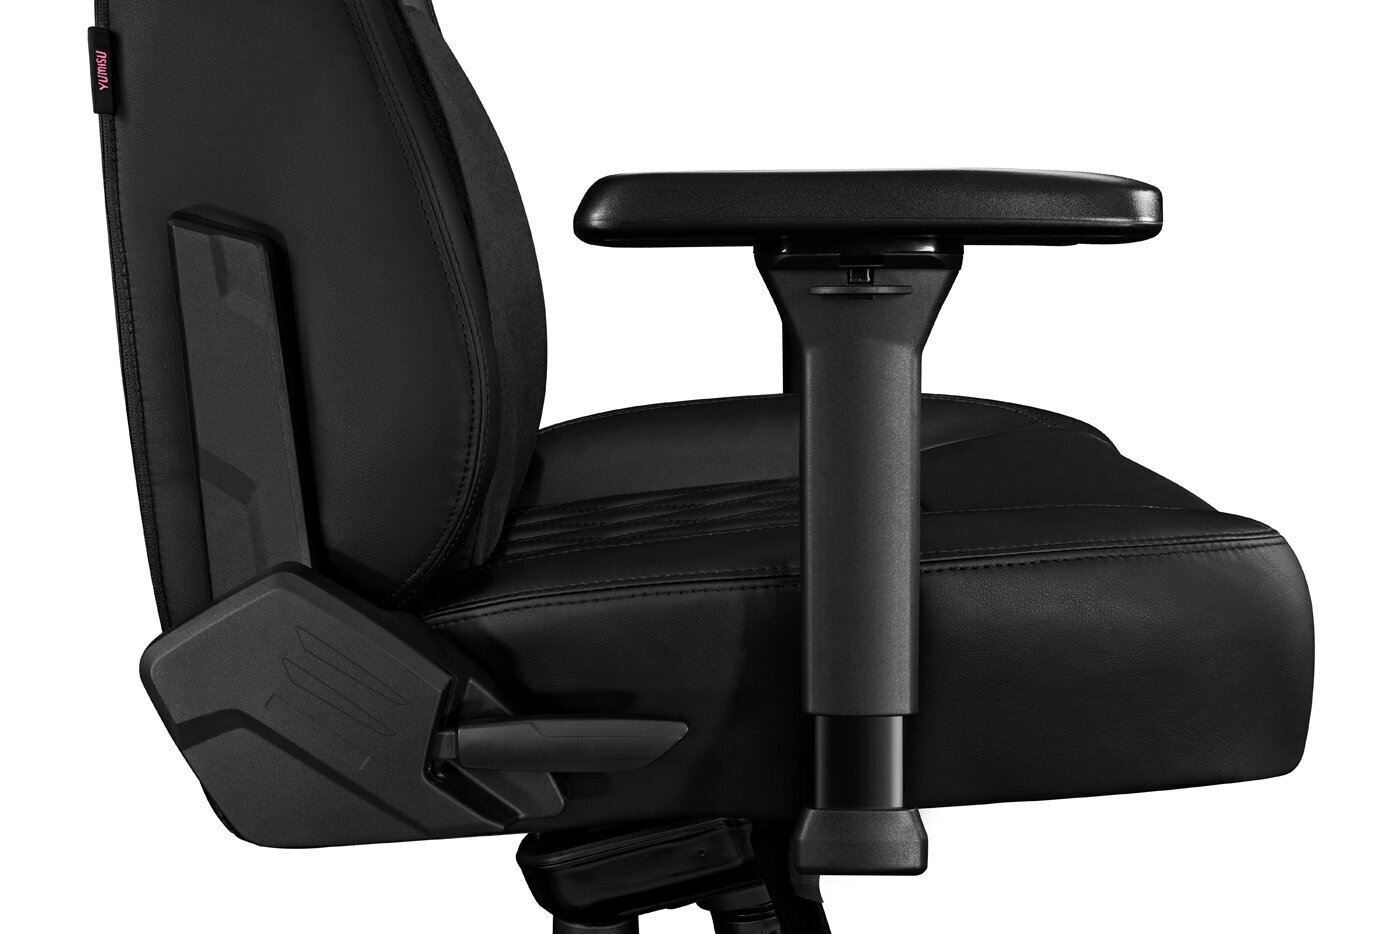 Kompiuterio kėdė Yumisu 2053, kompiuterinių žaidimų žaidėjams, juodos spalvos kaina ir informacija | Biuro kėdės | pigu.lt